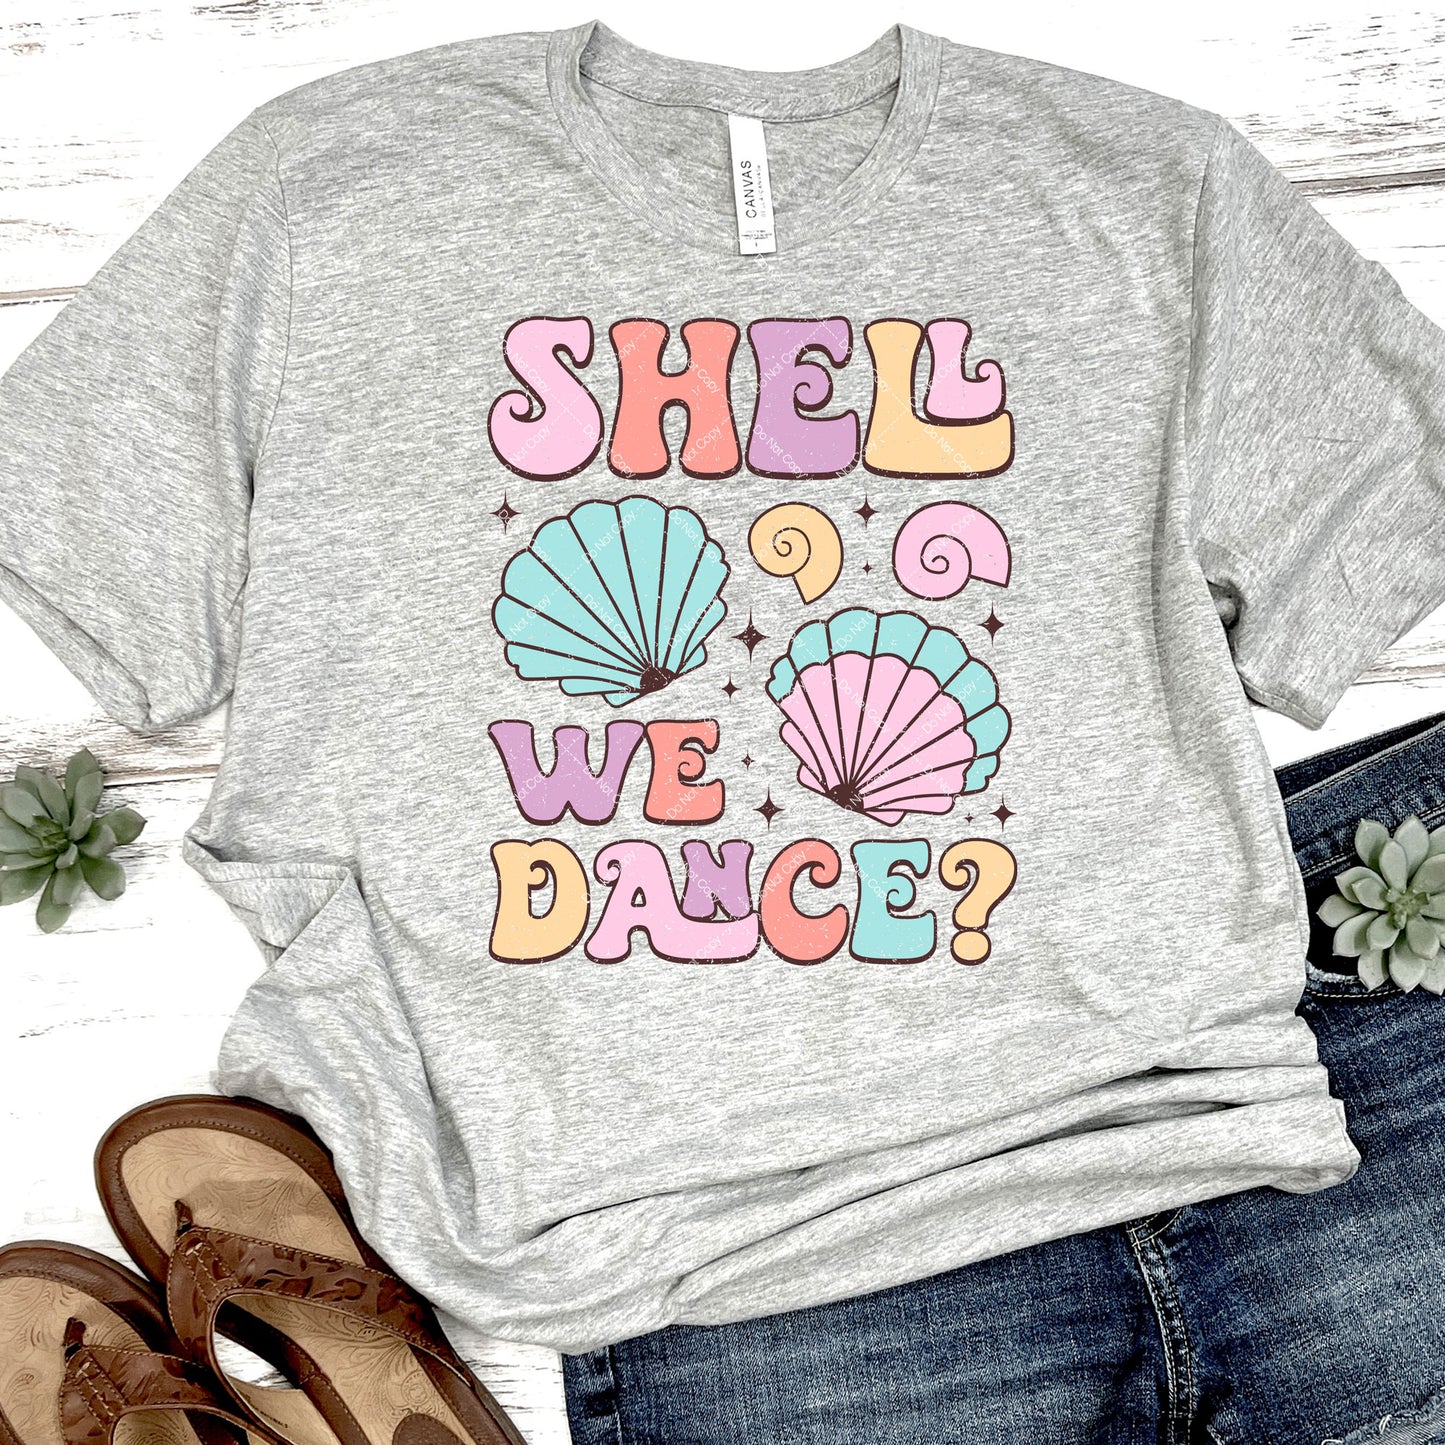 Shell We Dance? DTF Transfer